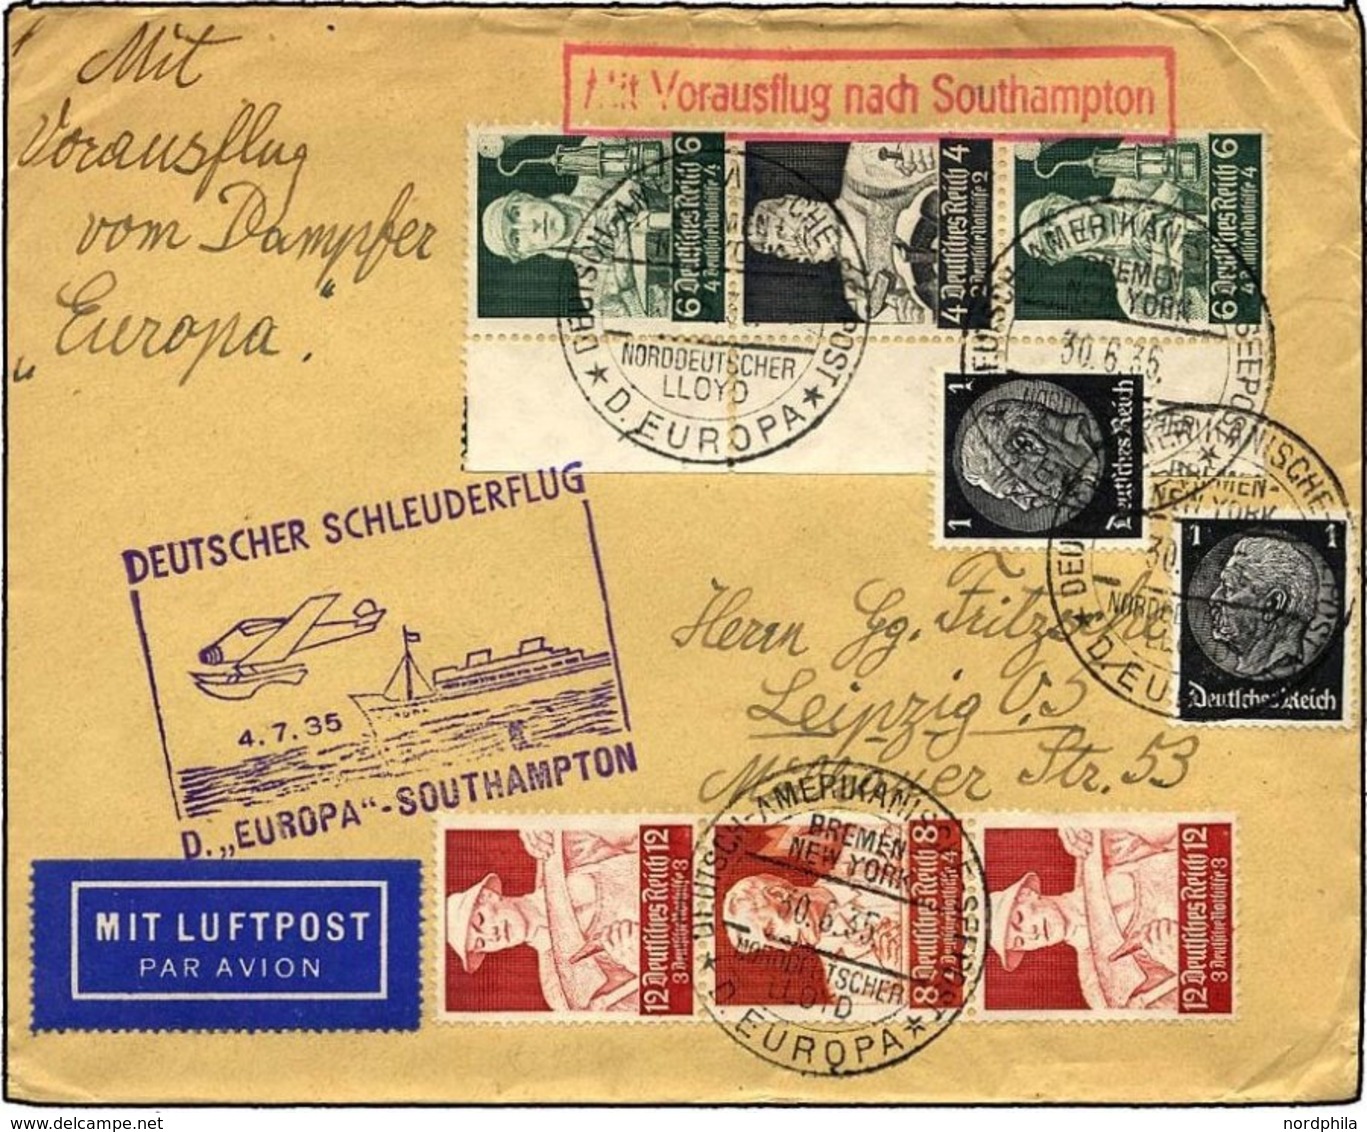 KATAPULTPOST 197c BRIEF, 4.7.1934, Europa - Southampton, Deutsche Seepostaufgabe, Zusammendruck-Frankatur (u.a. S 230),  - Covers & Documents